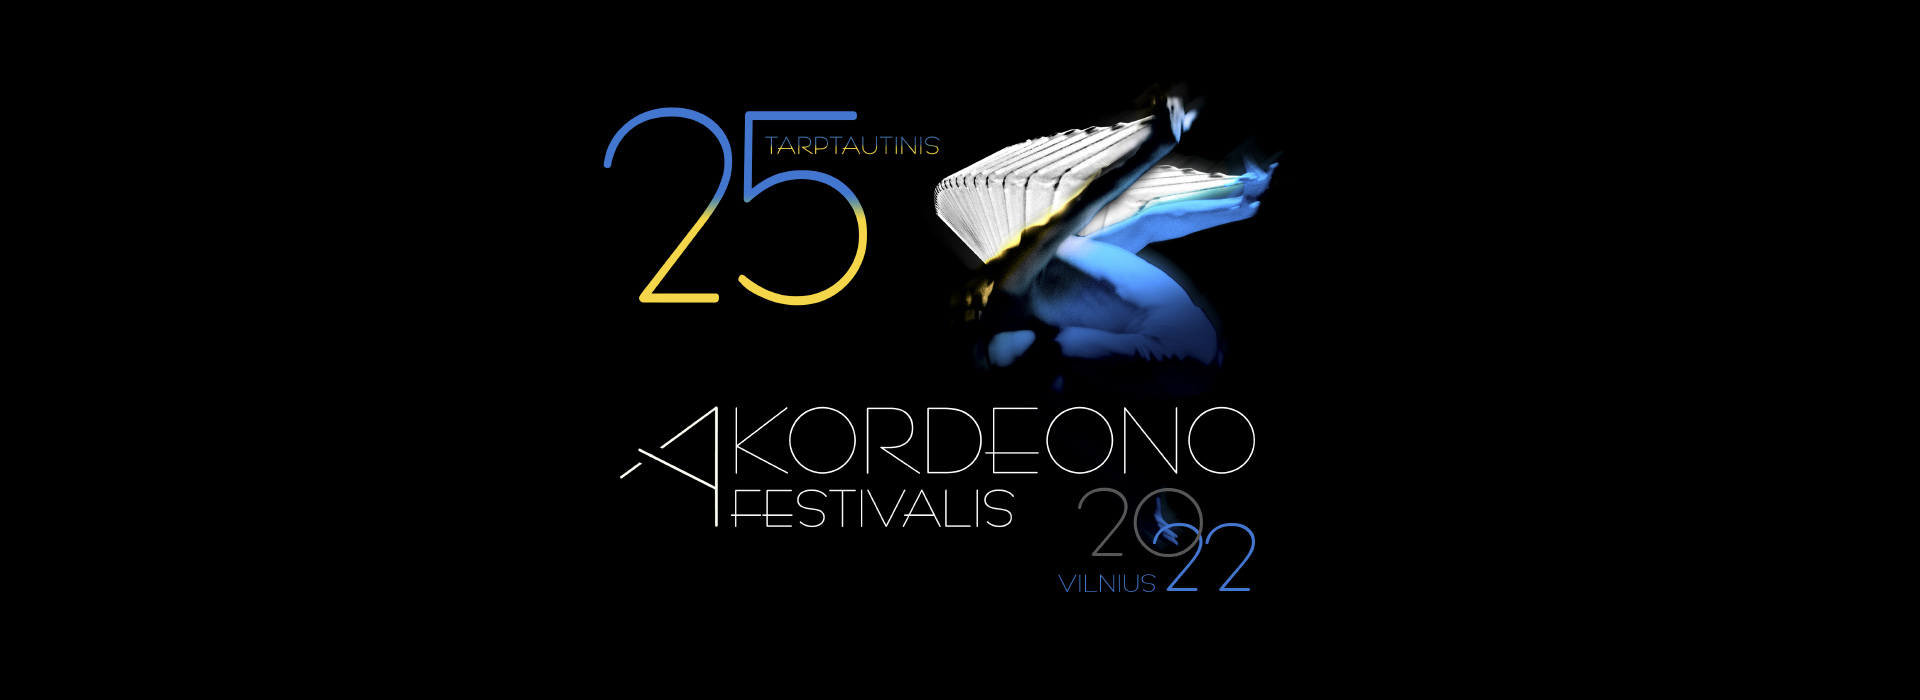 25-asis Tarptautinis Akordeono festivalis VILNIUS 2022